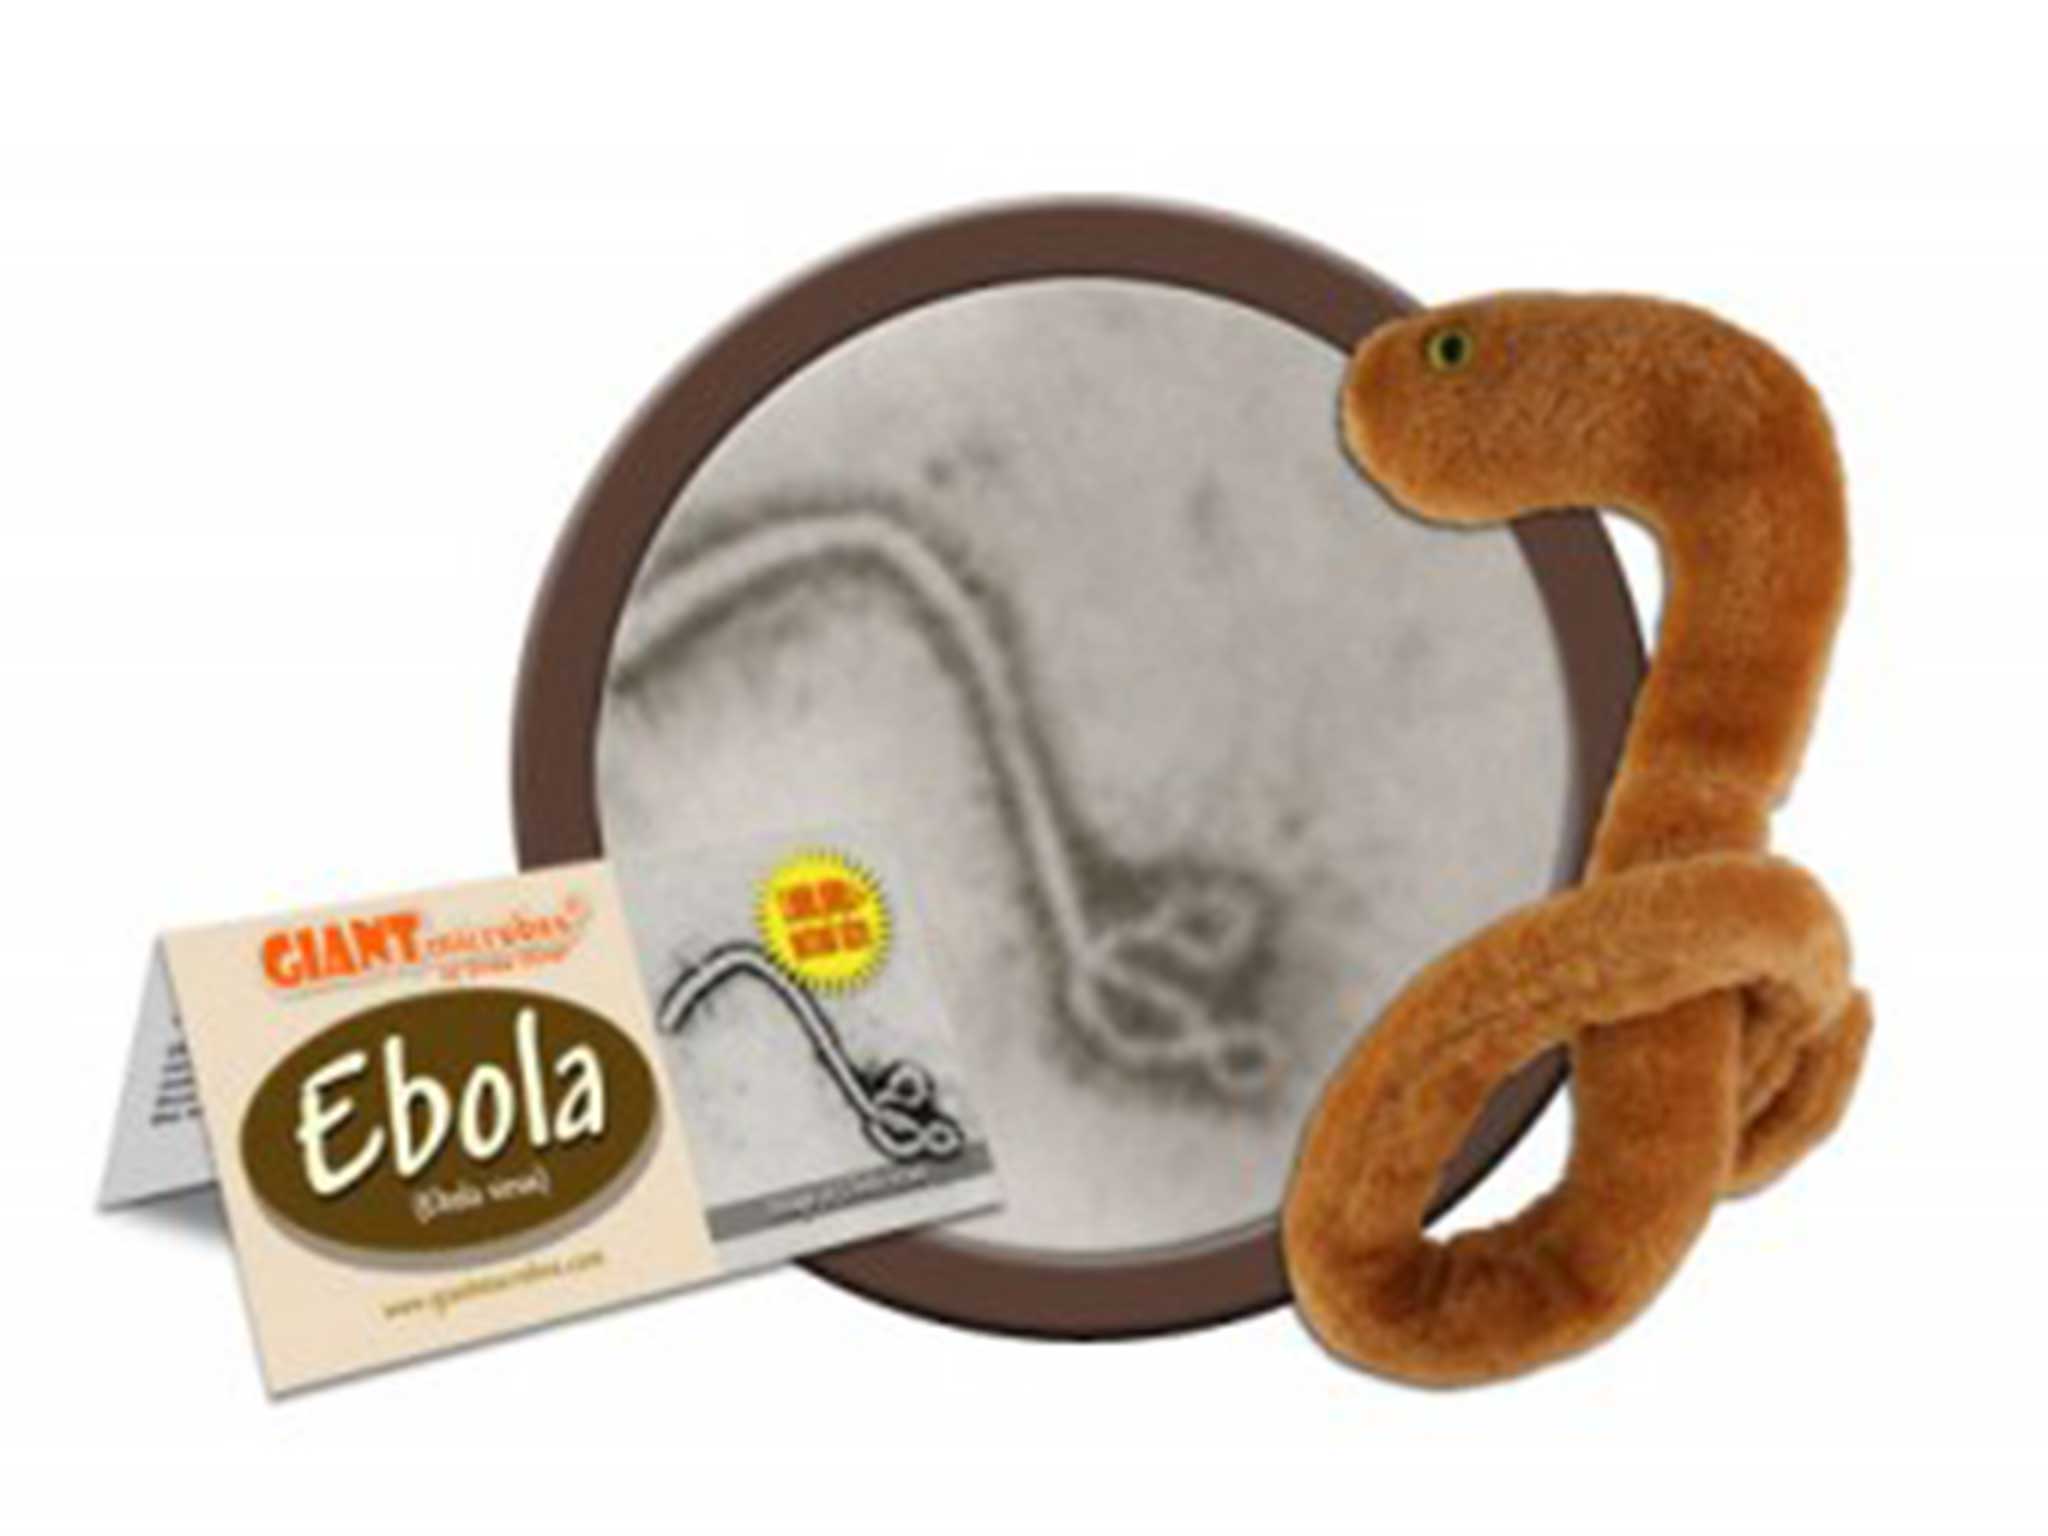 ebola toys